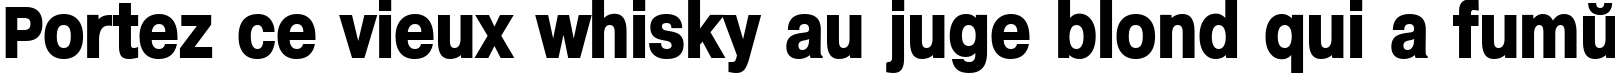 Пример написания шрифтом Helvetica Headlines текста на французском